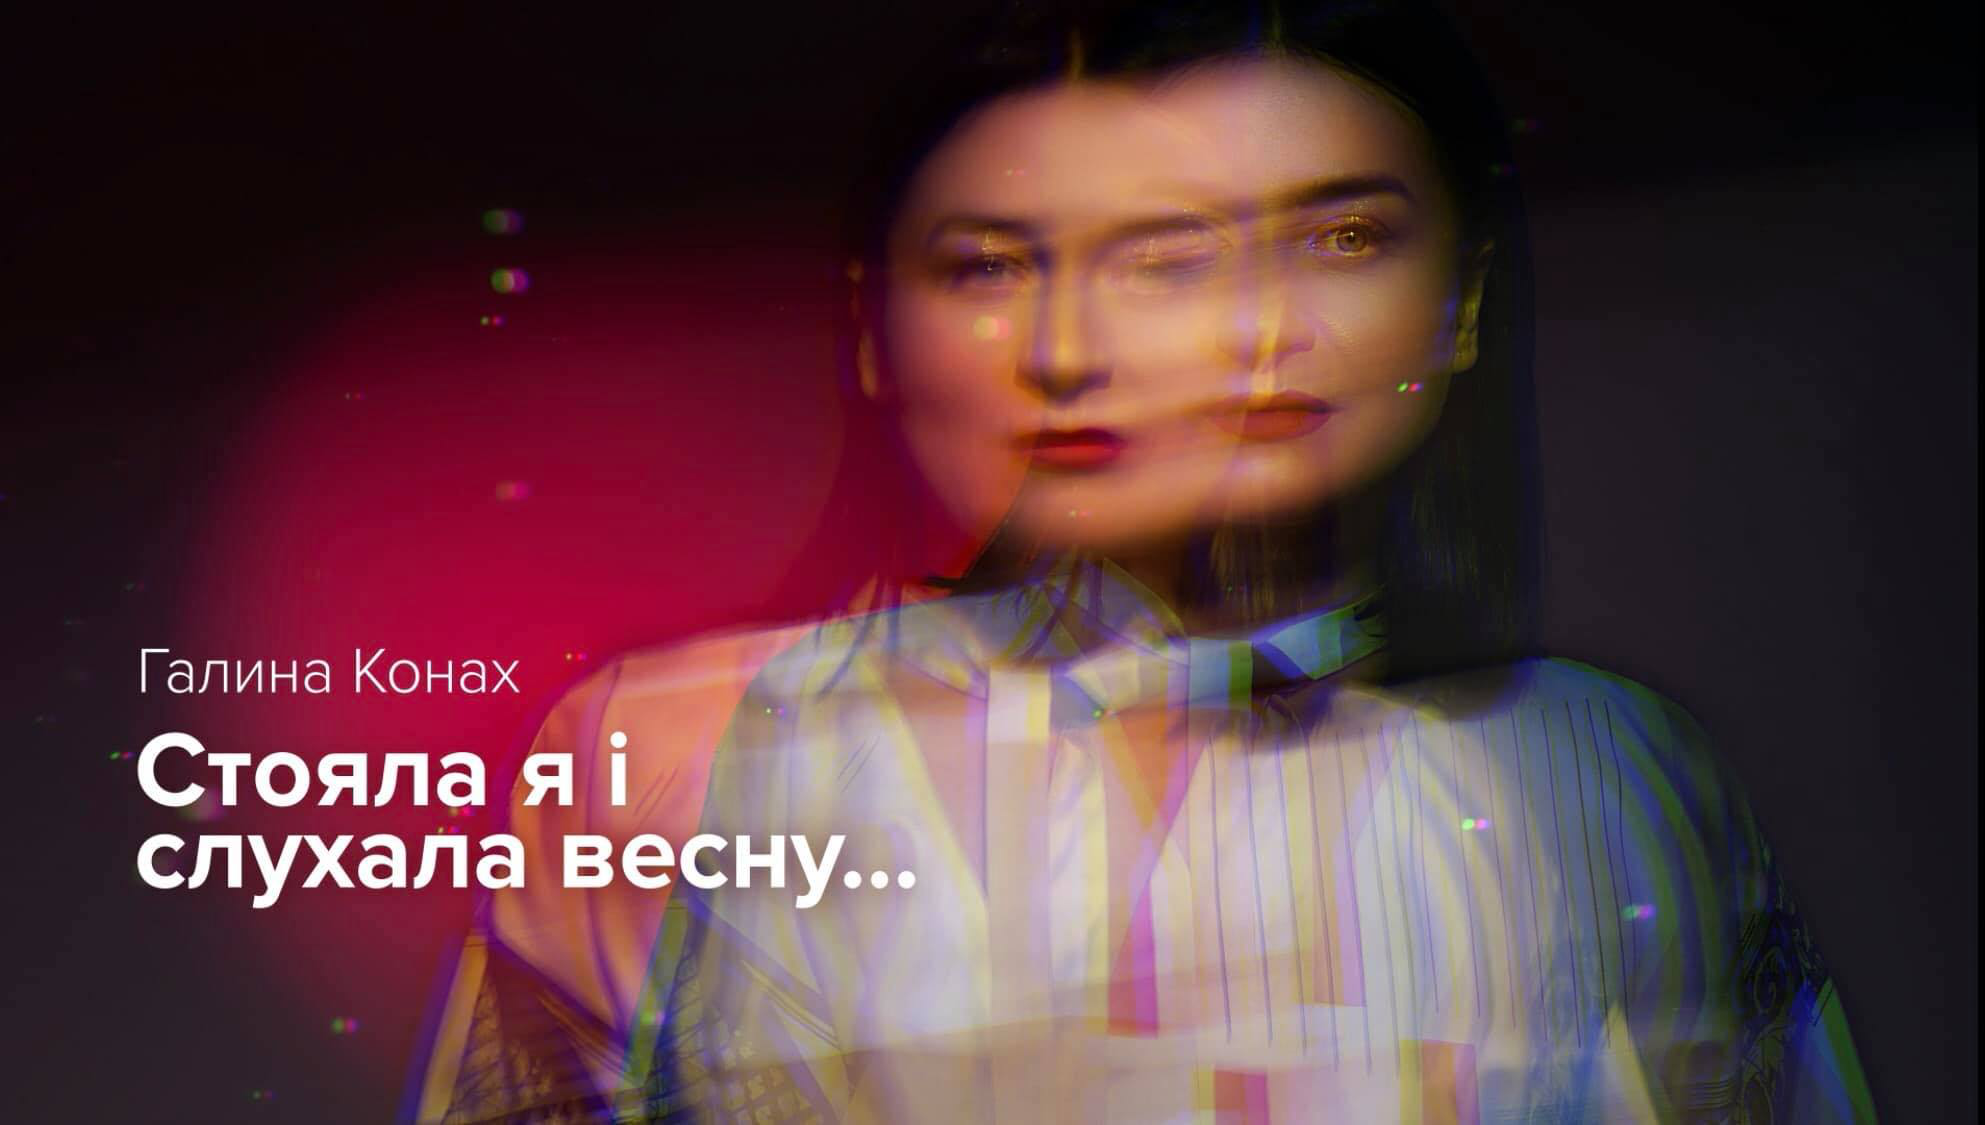 Луцька співачка Галина Конах випустила пісню на слова Лесі Українки